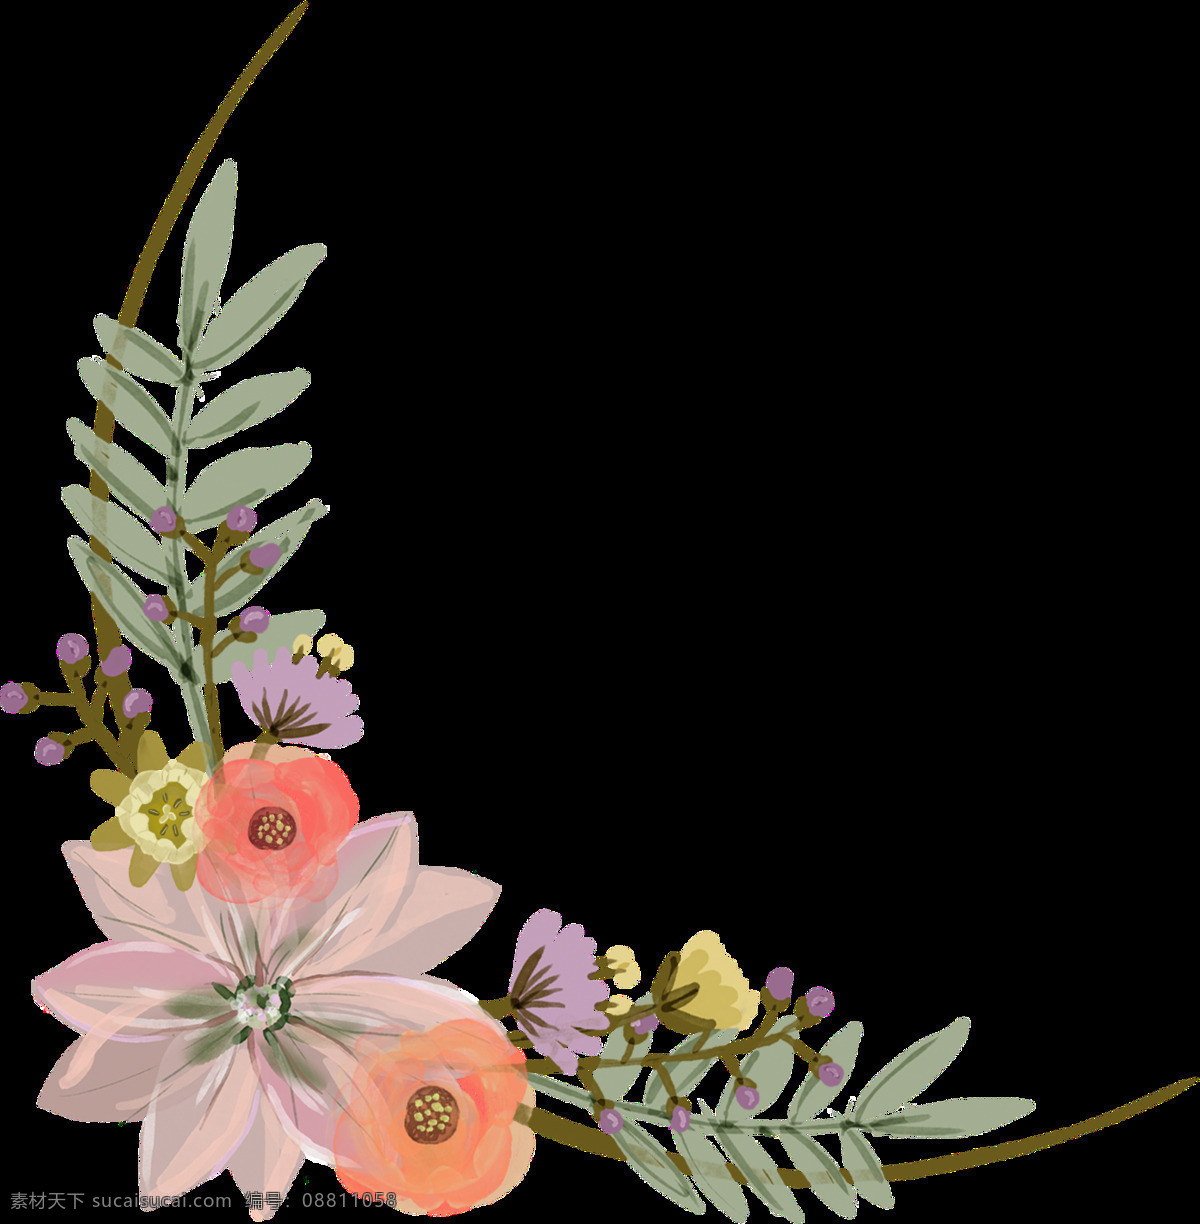 手绘 美丽 鲜花 边角 透明 漂亮 花朵 植物 搭配 粉红色 透明素材 免扣素材 装饰图片